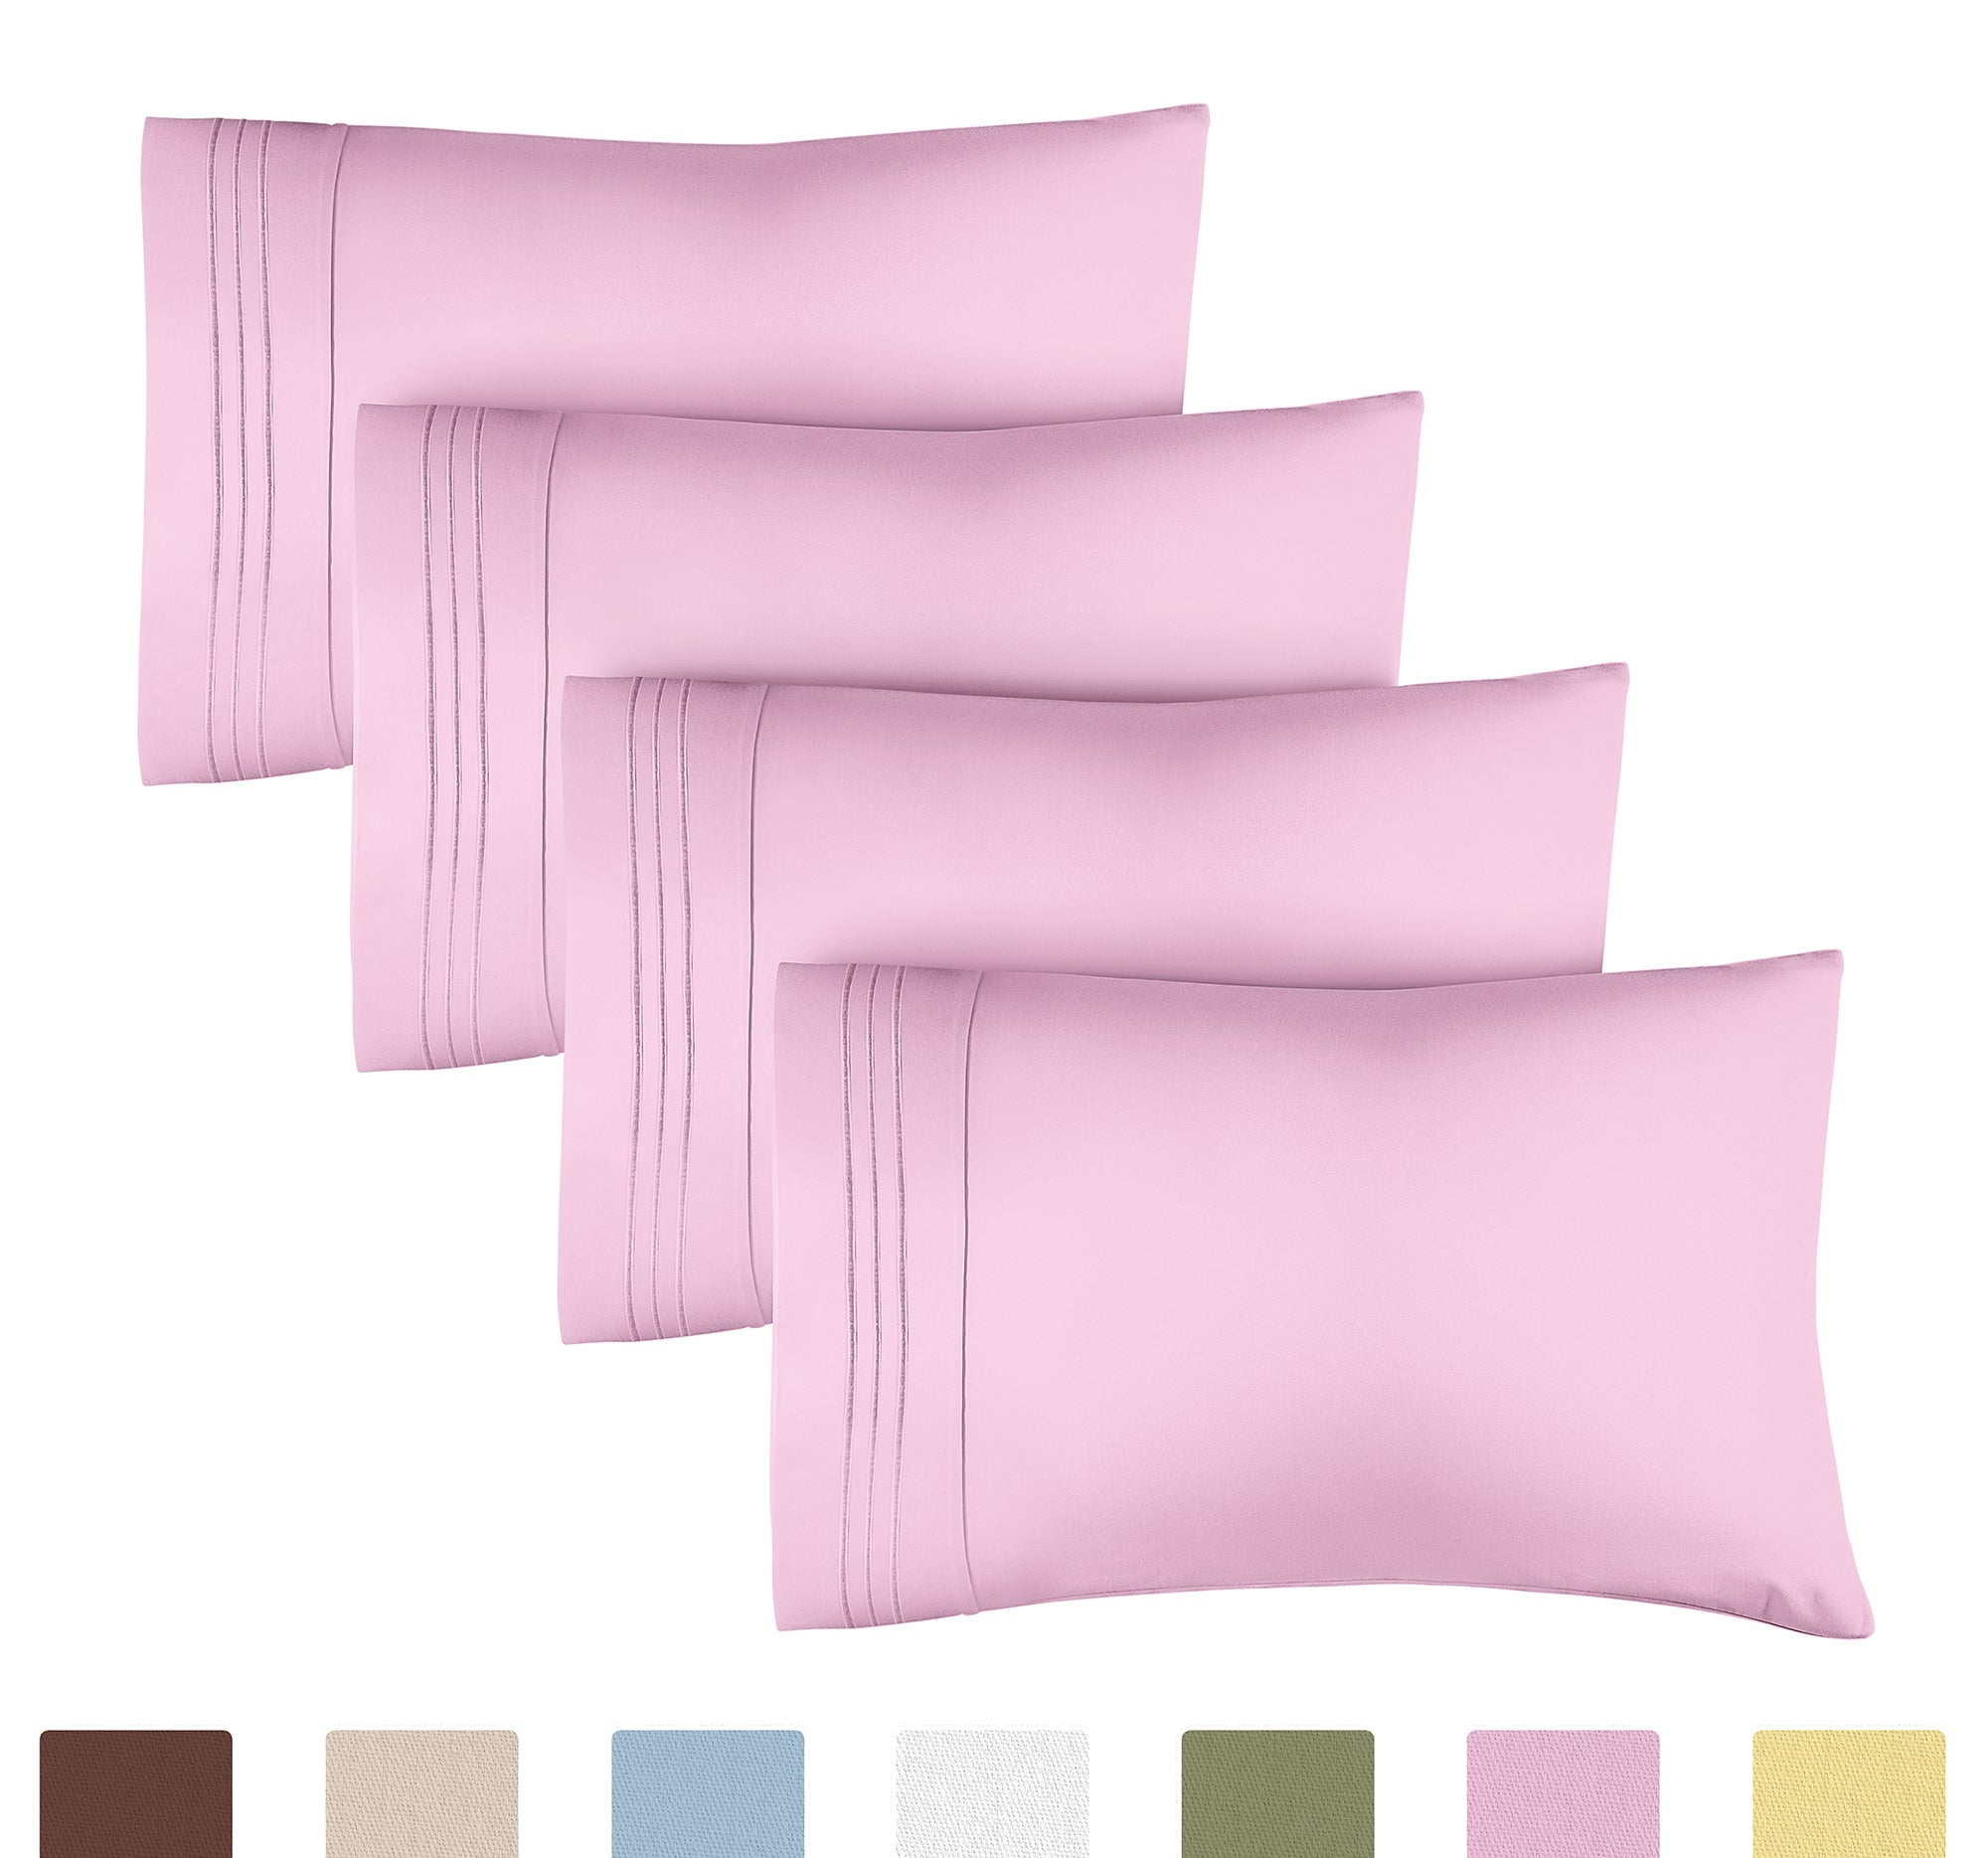 tes 4 Pillowcase Set - Light Pink